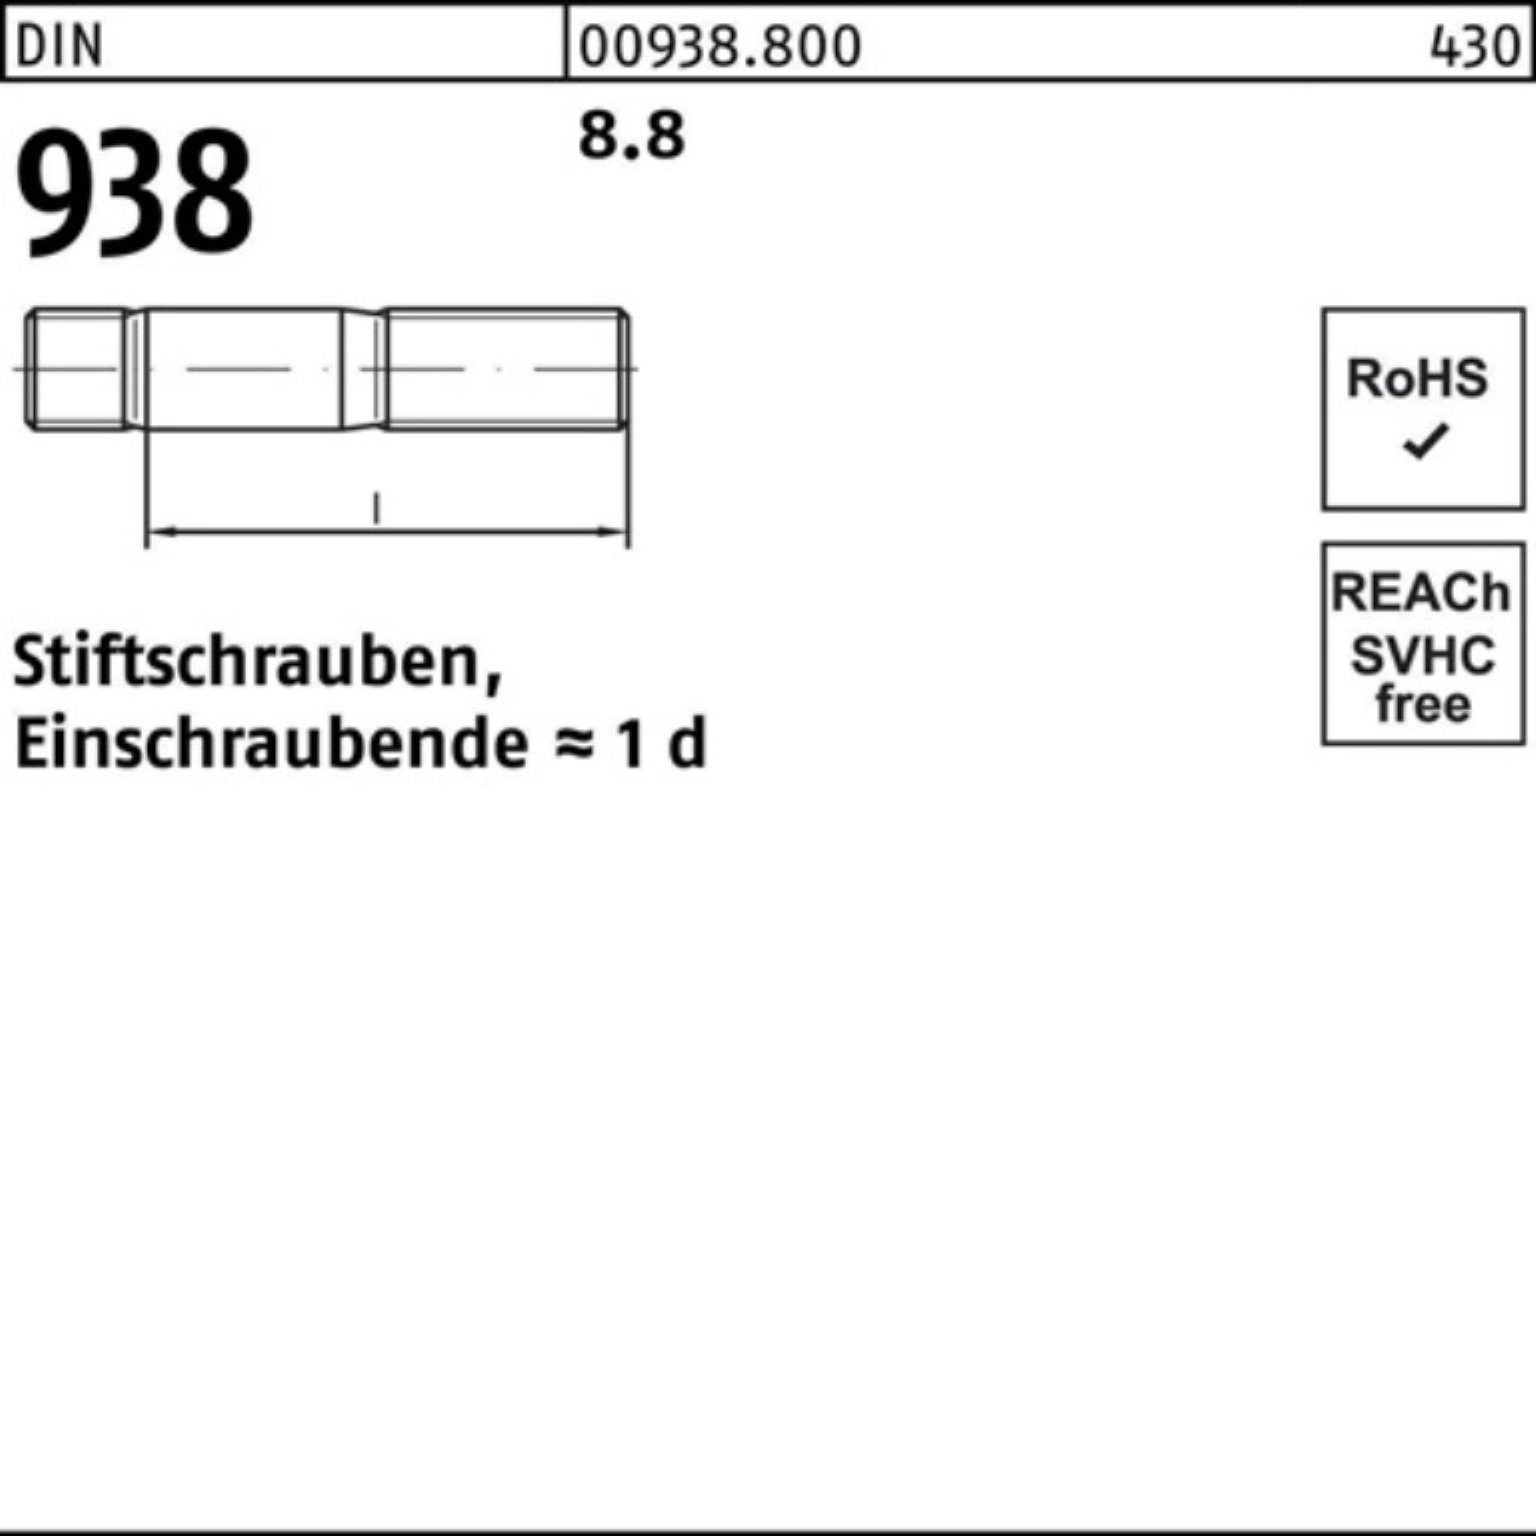 Reyher Stiftschraube 100er Pack DIN 10 938 80 Sti Stiftschraube 8.8 M20x DIN 8.8 Stück 938